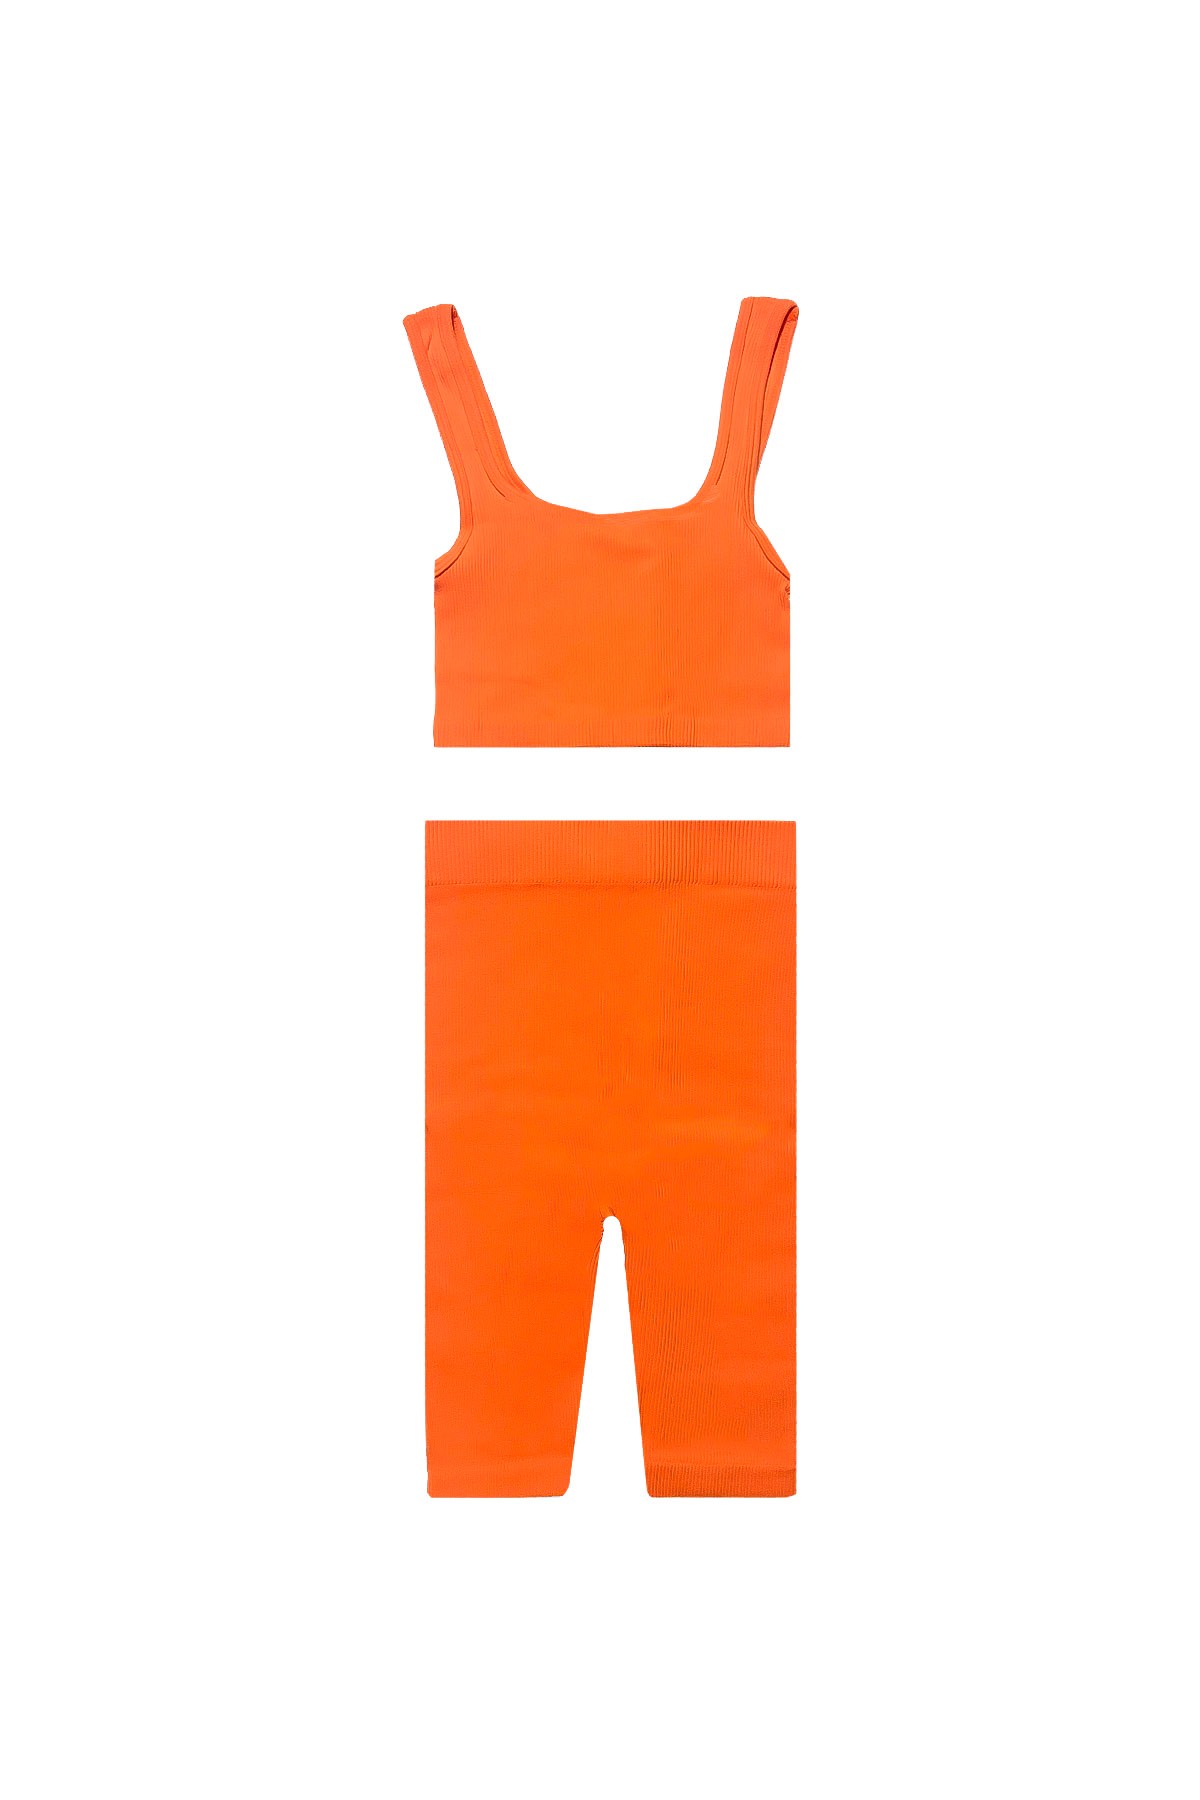 Geo - لباس بدون درزات للبضعة - البرتقالي